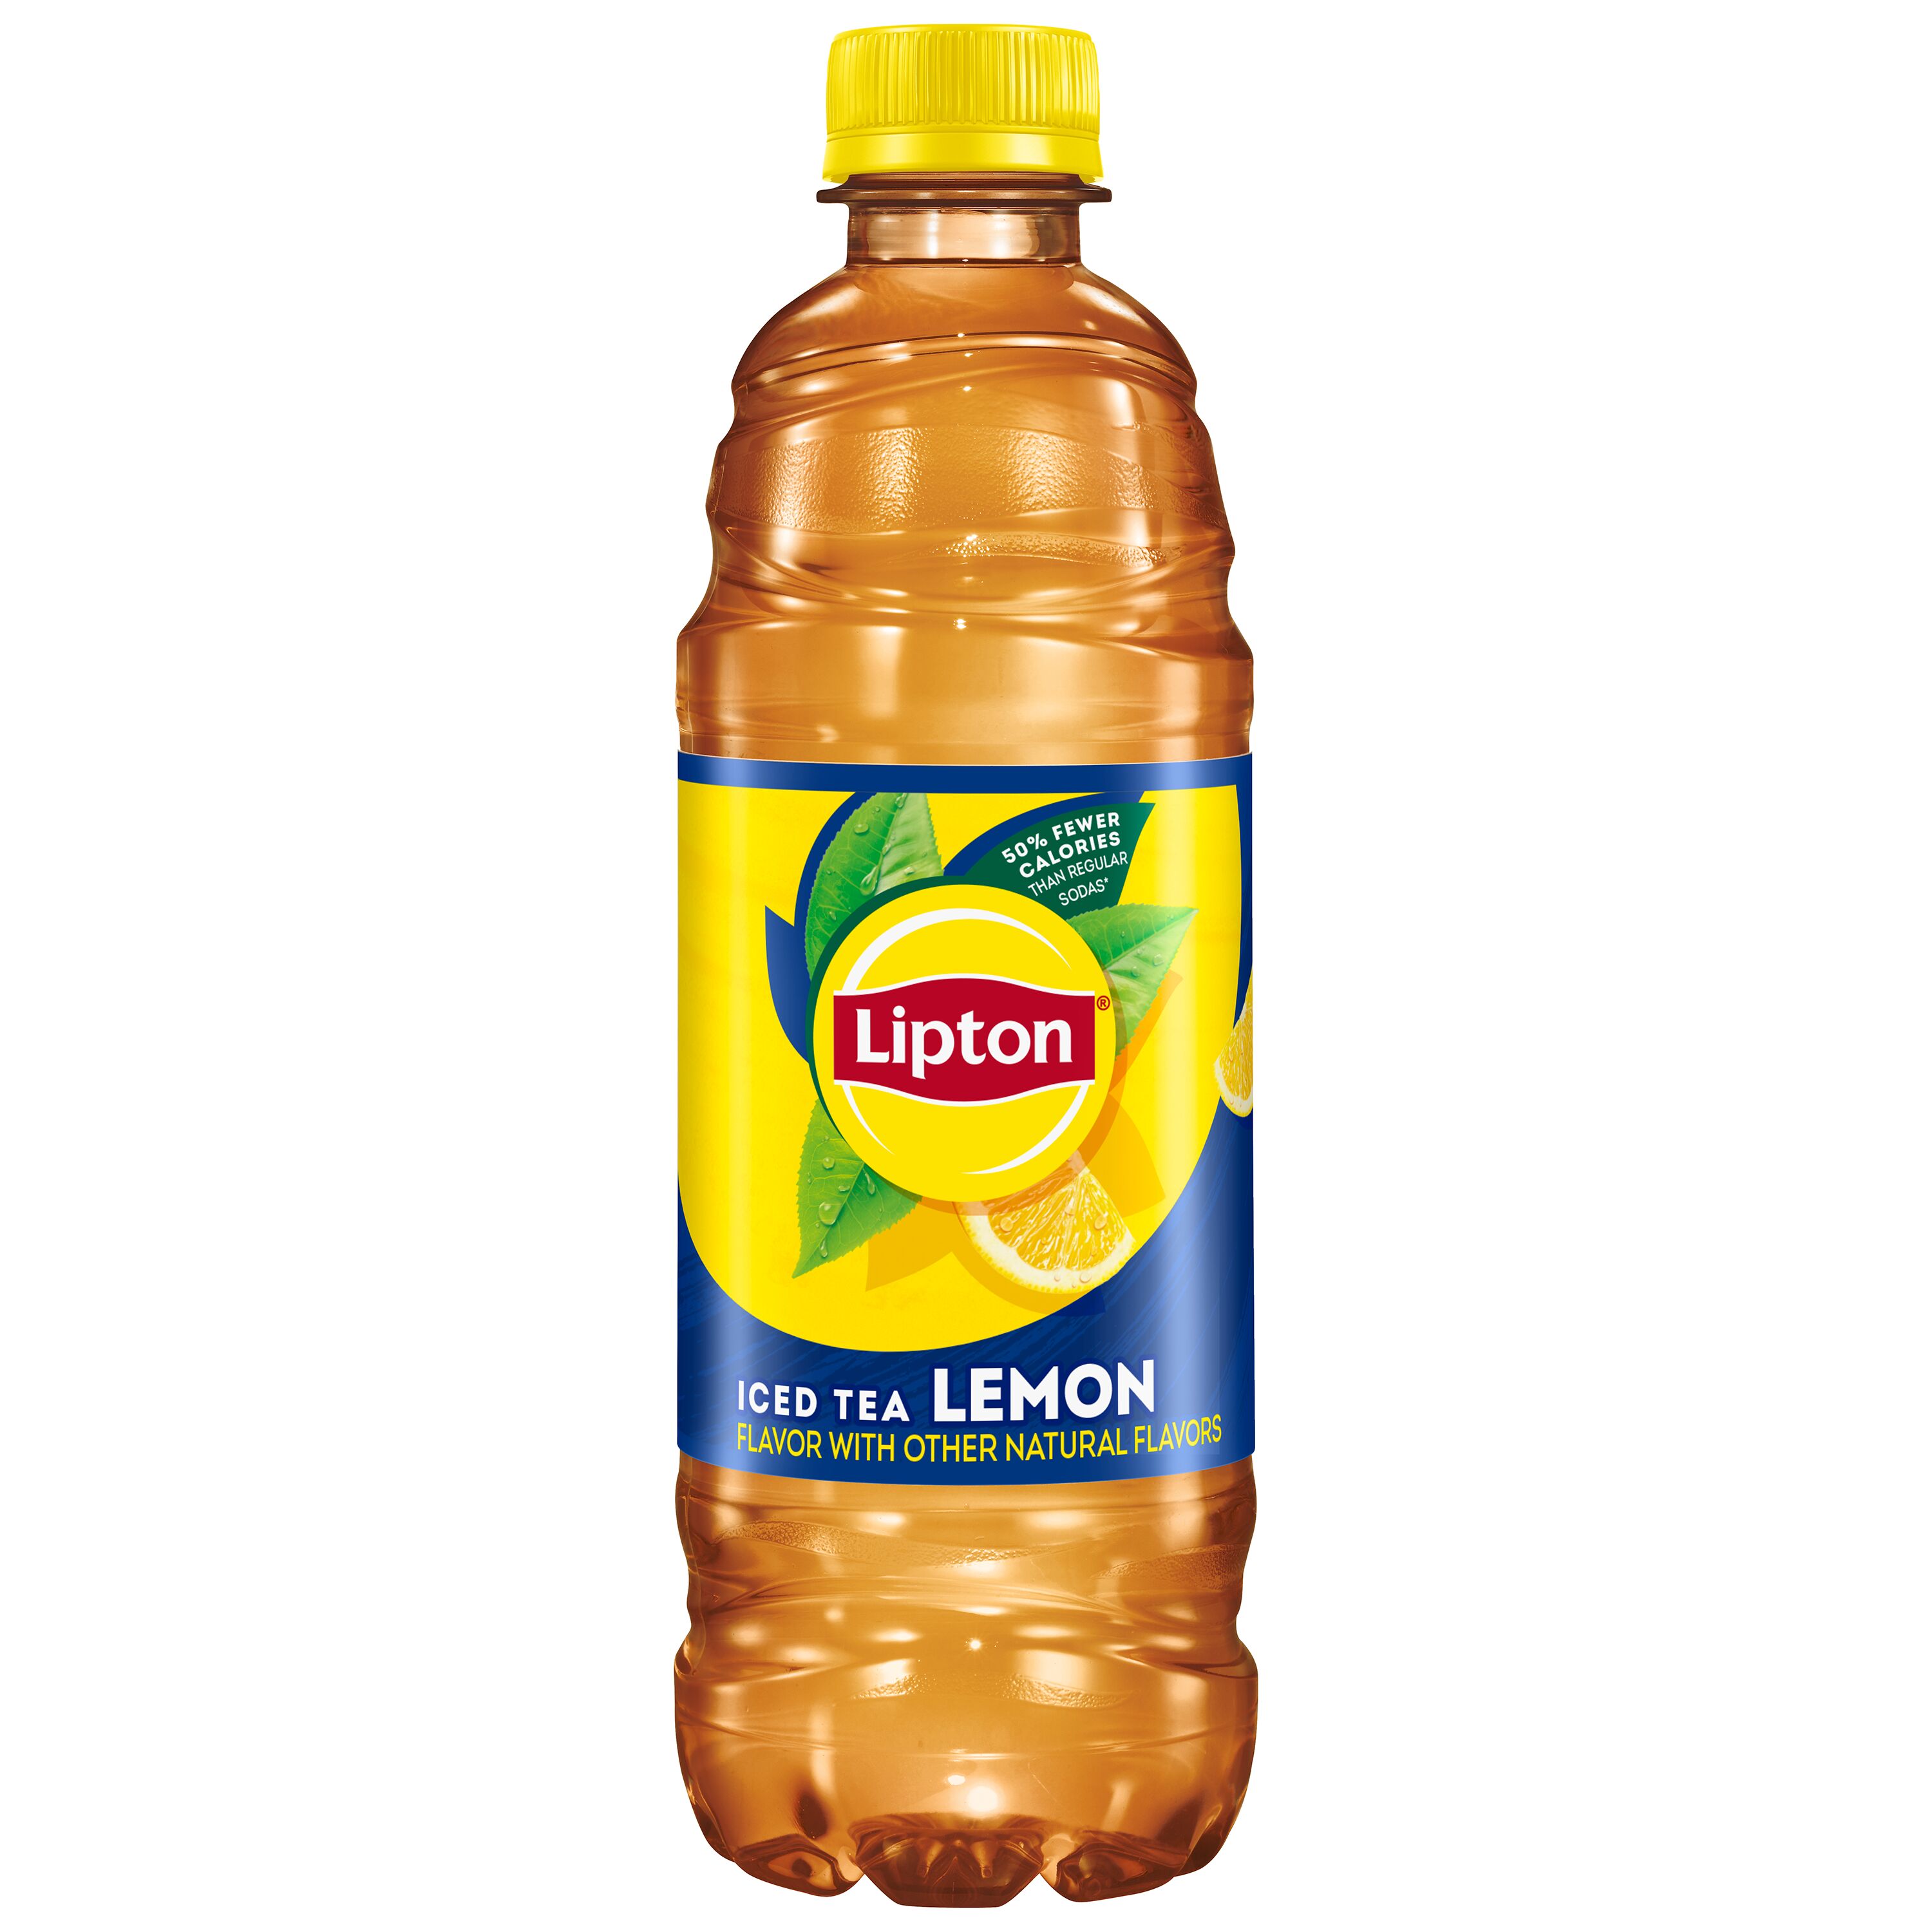 Lipton Lemon Iced Tea, 16.9 fl oz, 12 Pack Bottles - image 4 of 6